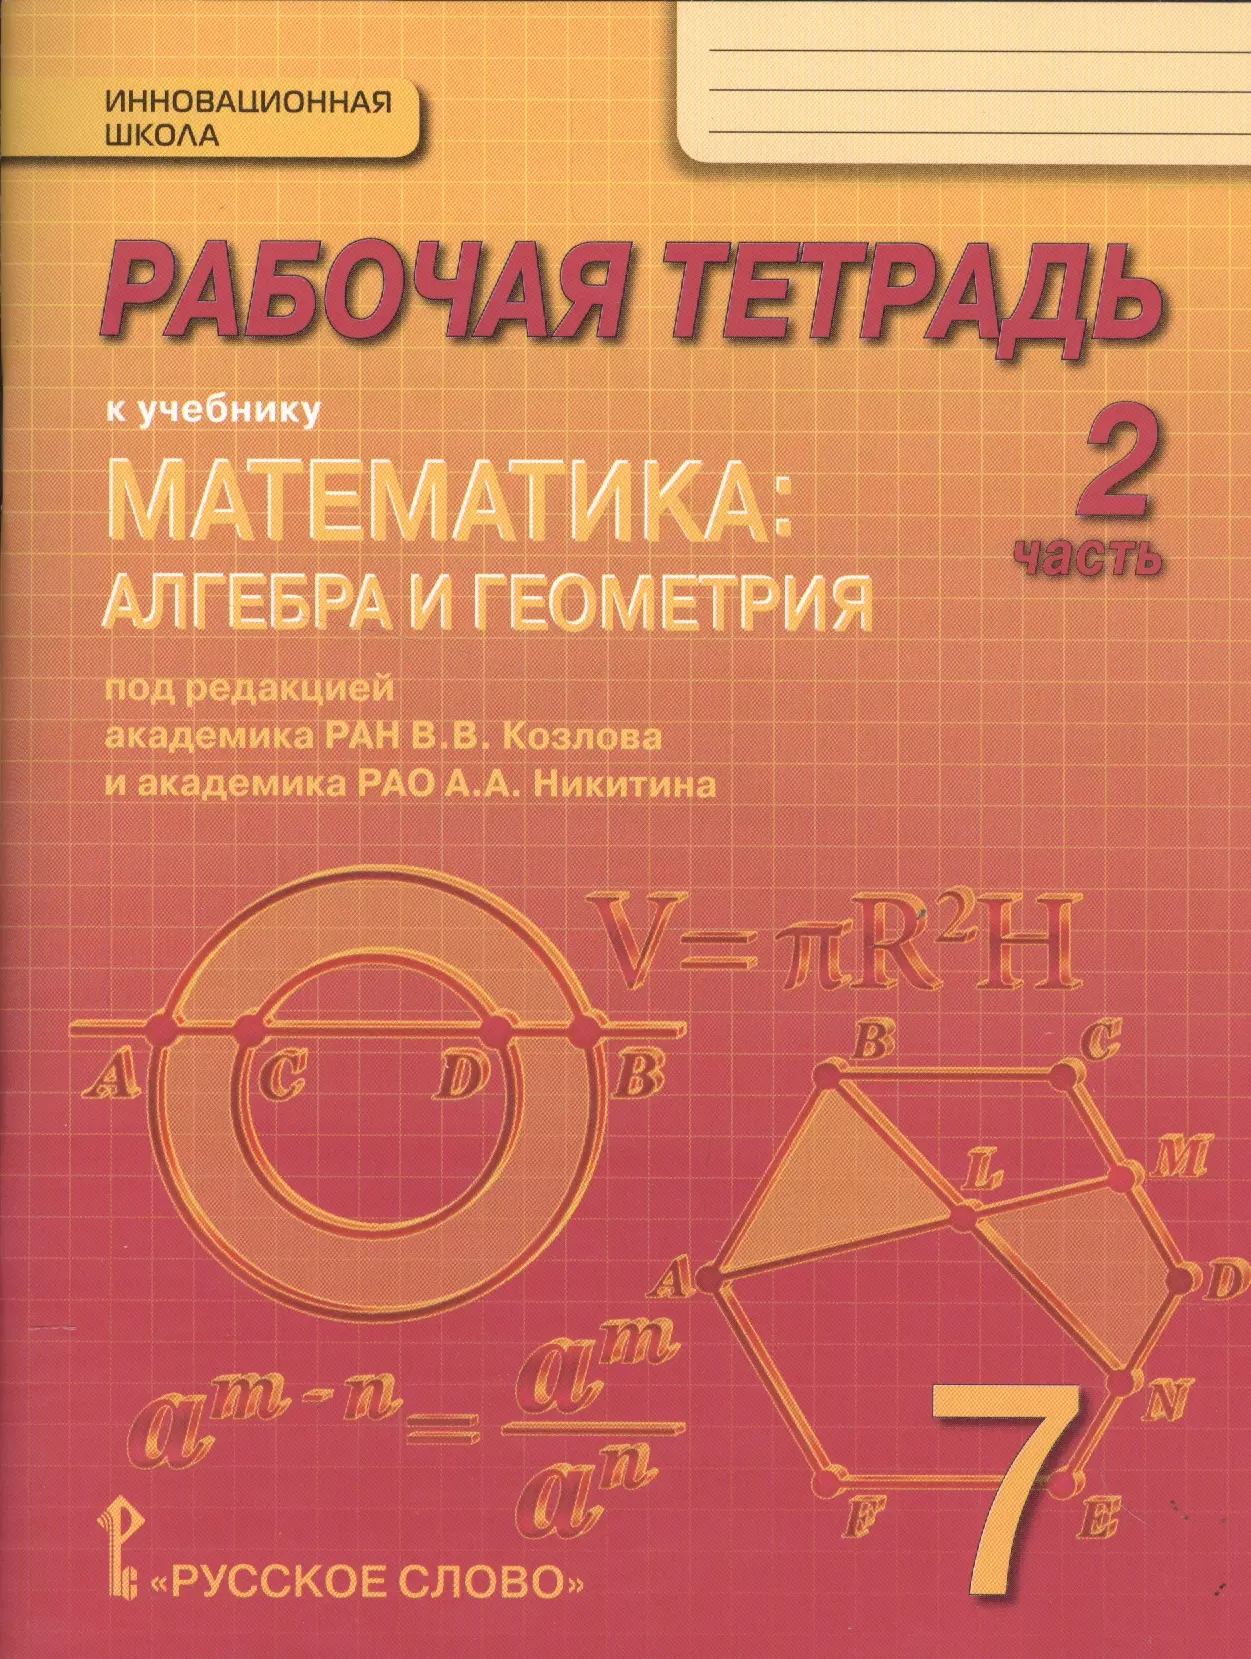 Рабочая тетрадь к учебнику Математика: алгебра и геометрия. 7 класс, 2 часть алгебра и геометрия уч пос матемоскр глухов